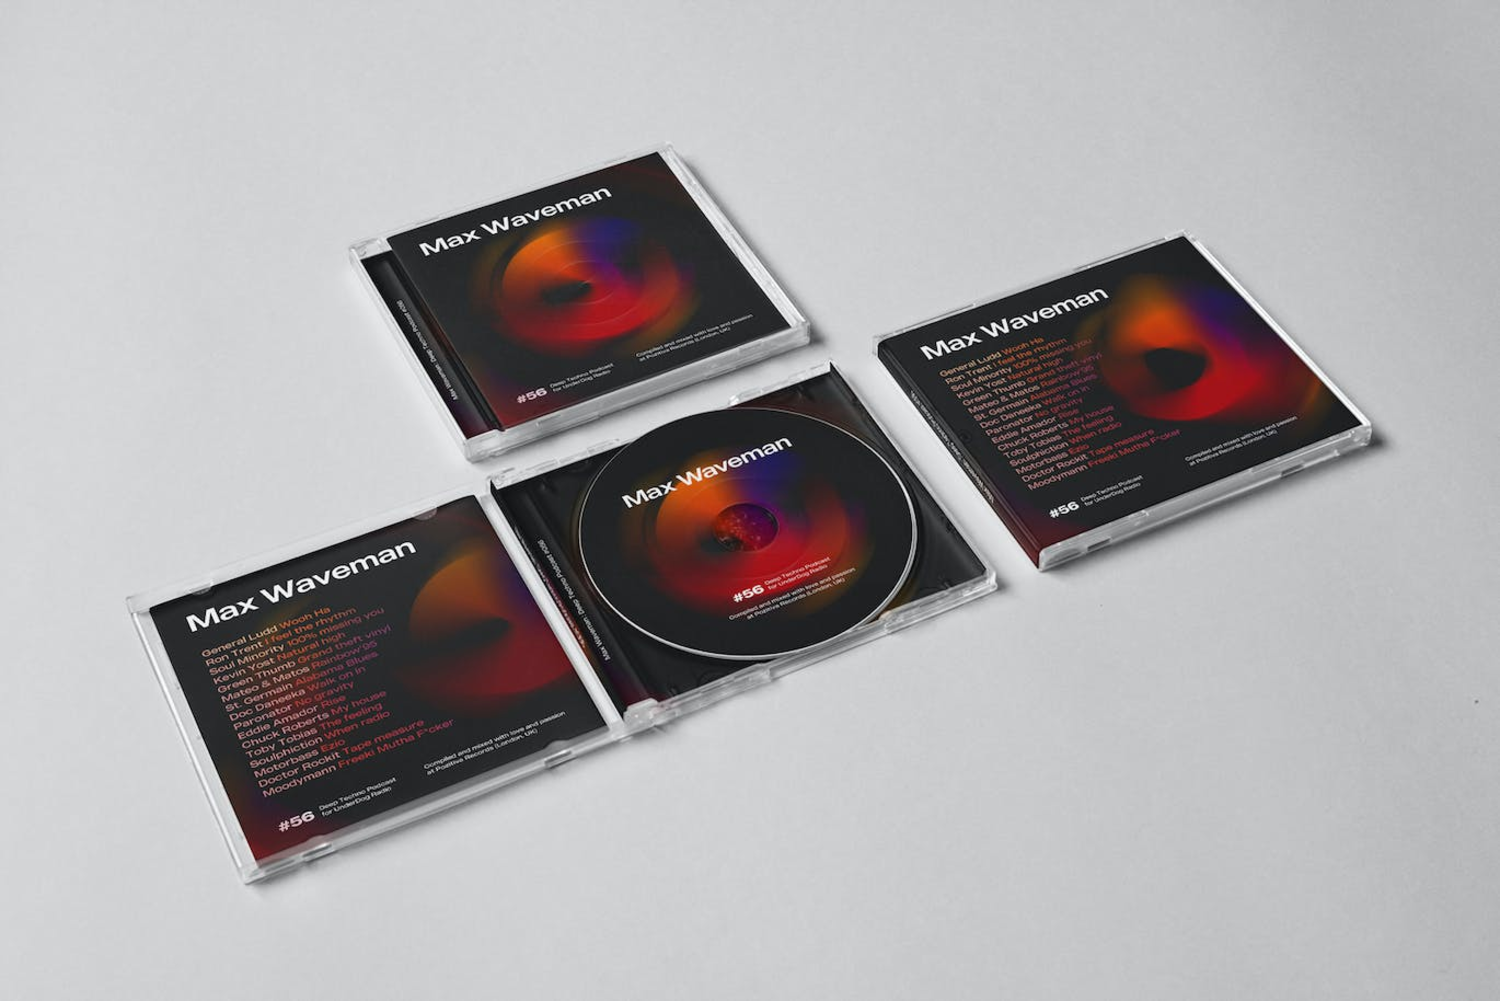 5762 时尚高端DJ CD光盘光碟包装设计VI样机展示模型mockups